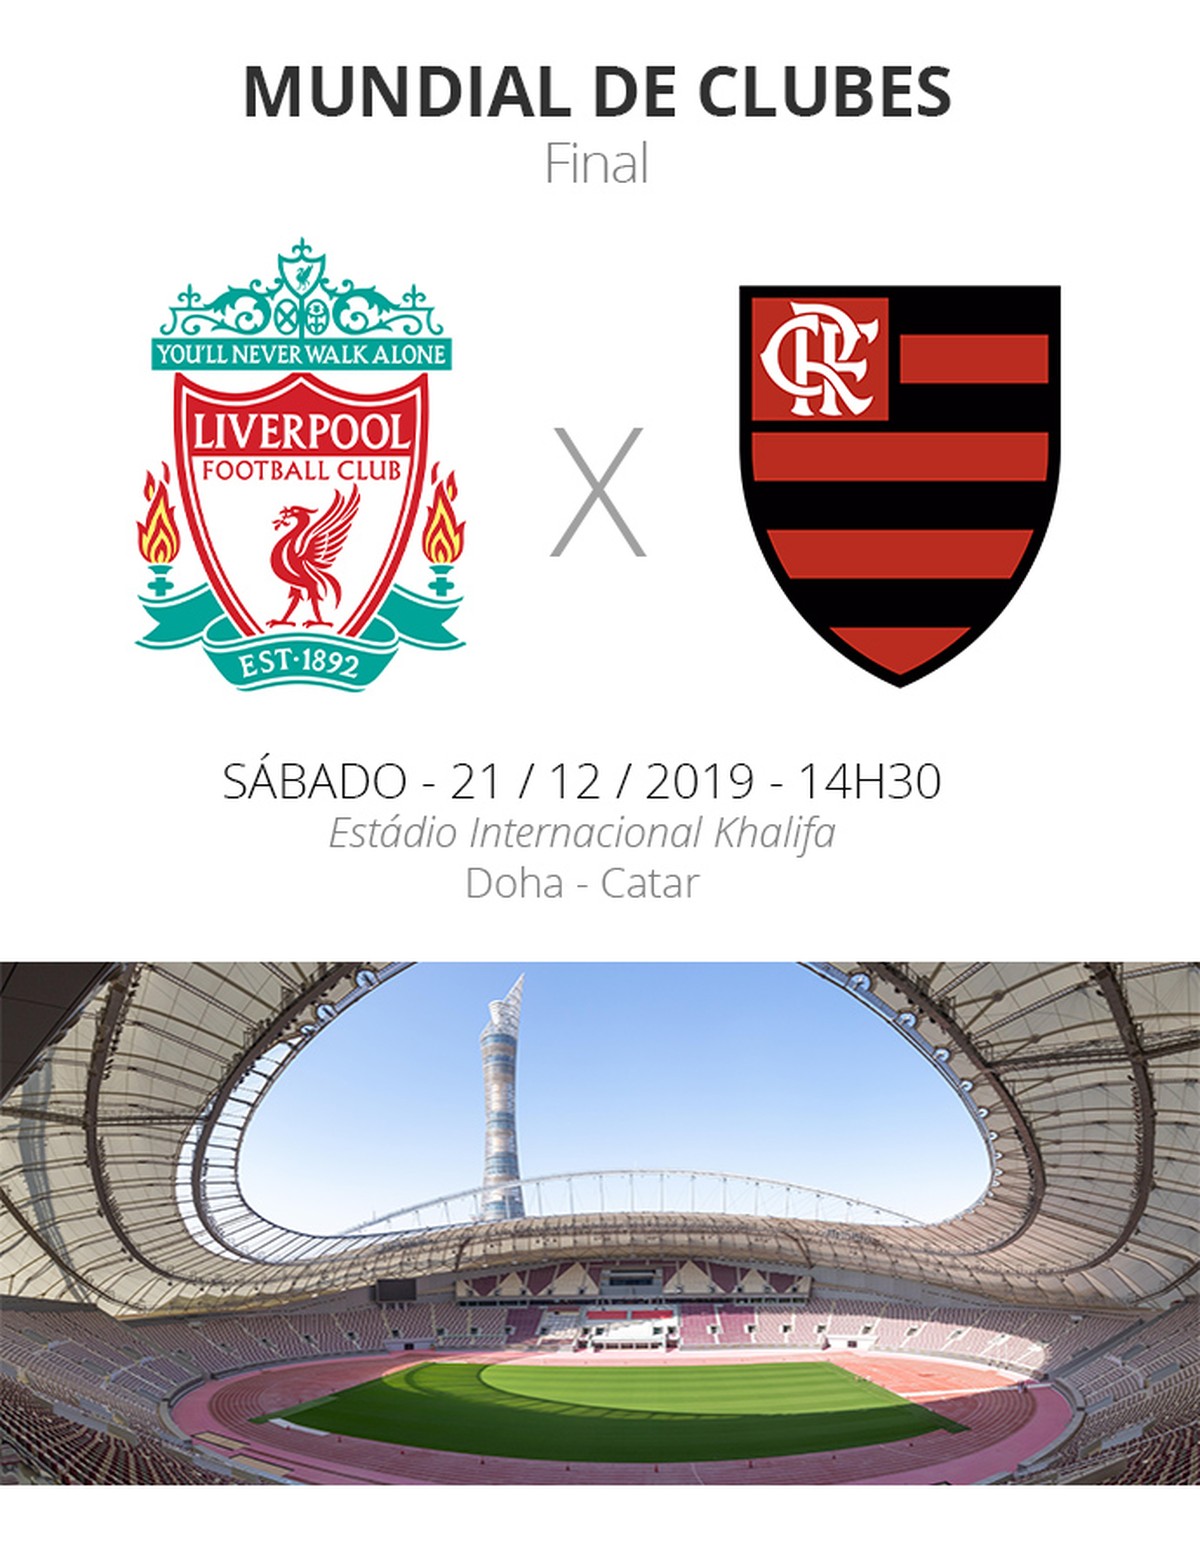 Evento Oficial - City x Liverpool: Transmissão do Jogo no Rio de